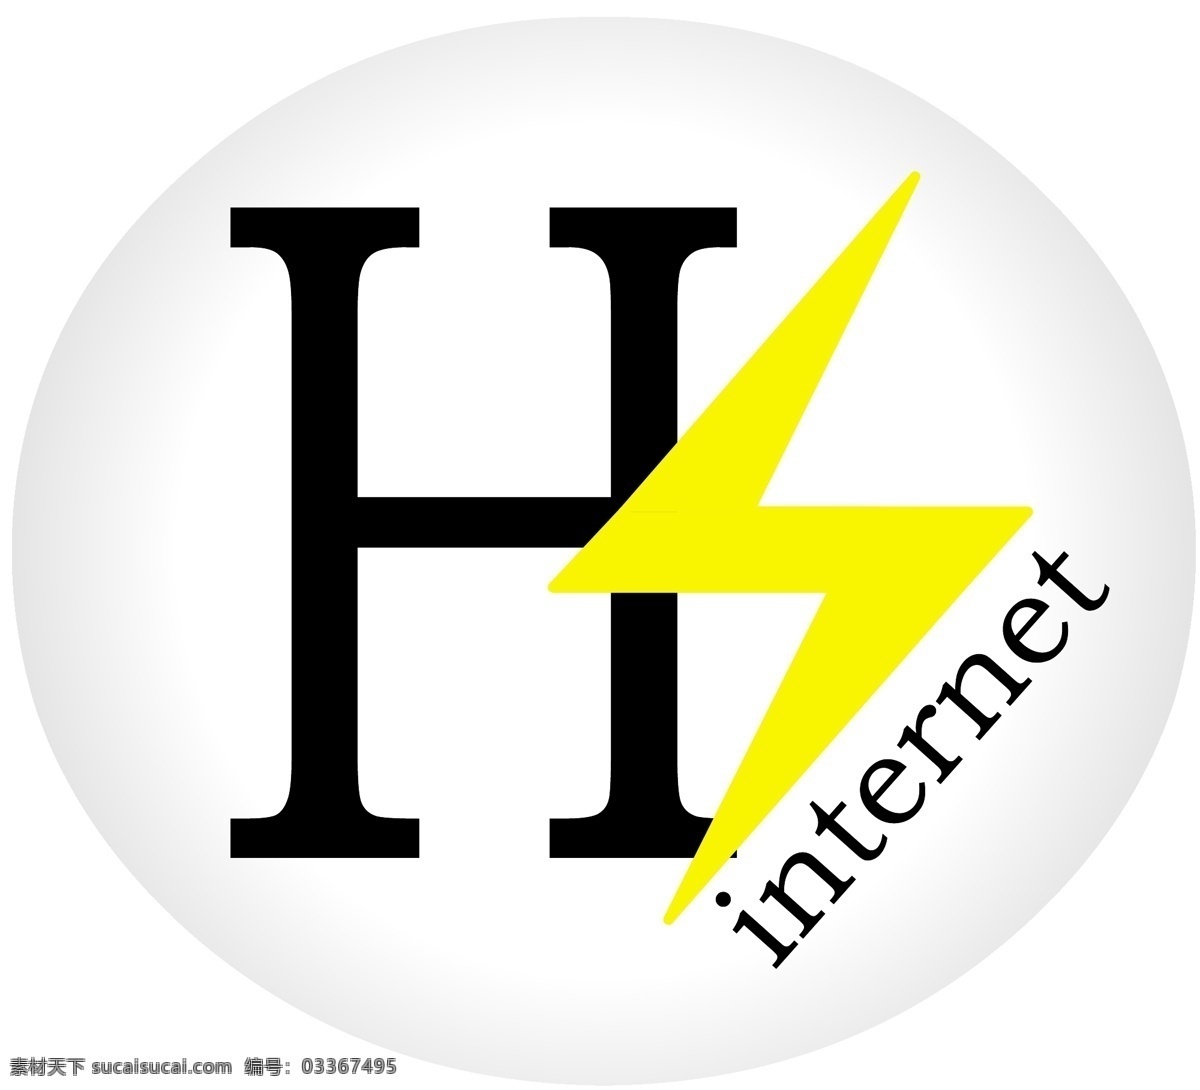 hs 网络 工作室 互联网 创作室 矢量图 其他矢量图